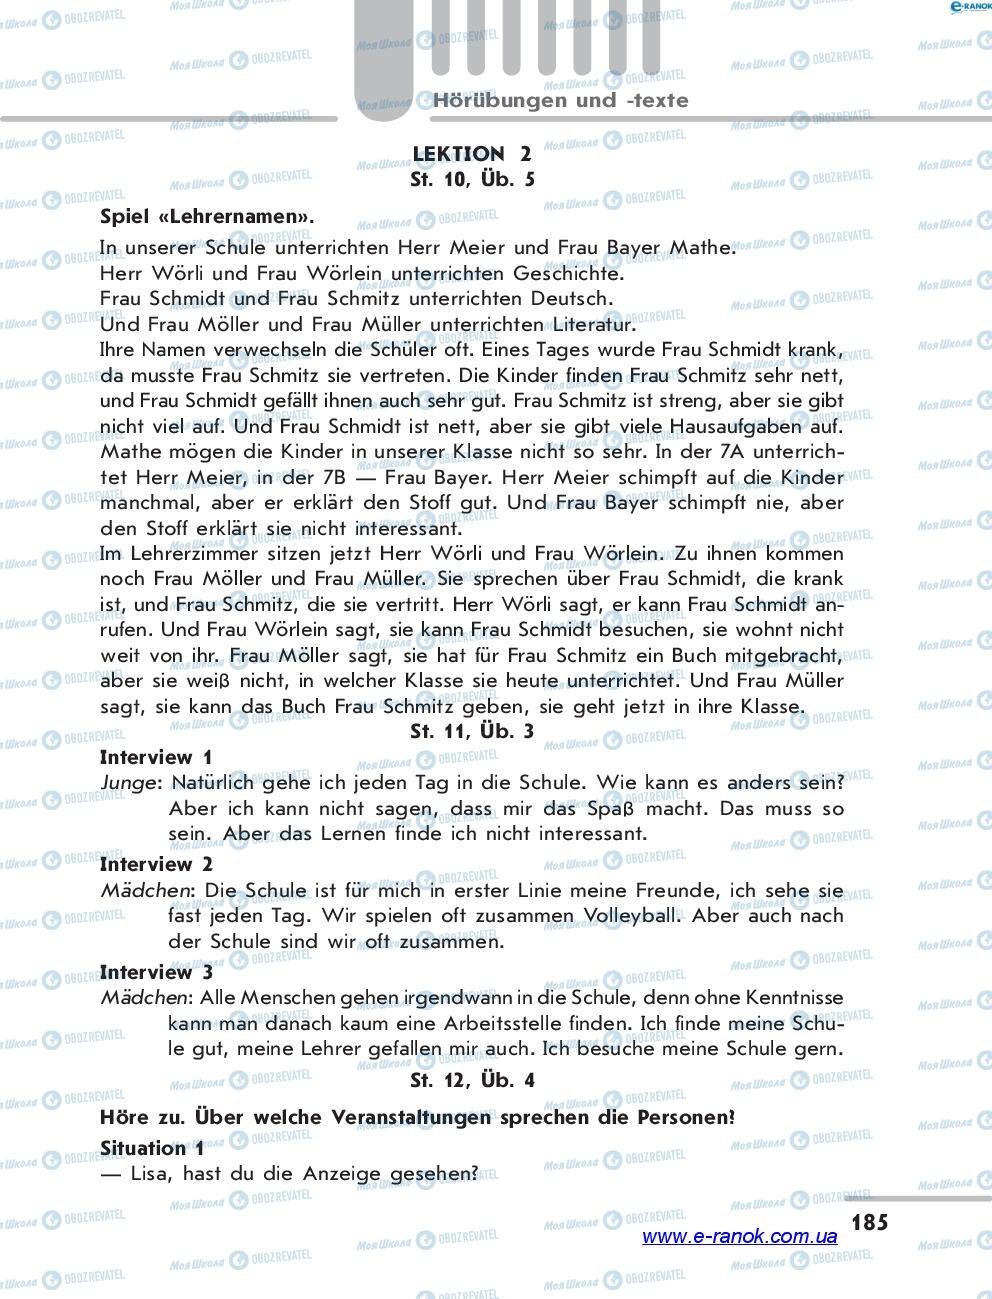 Підручники Німецька мова 7 клас сторінка 185